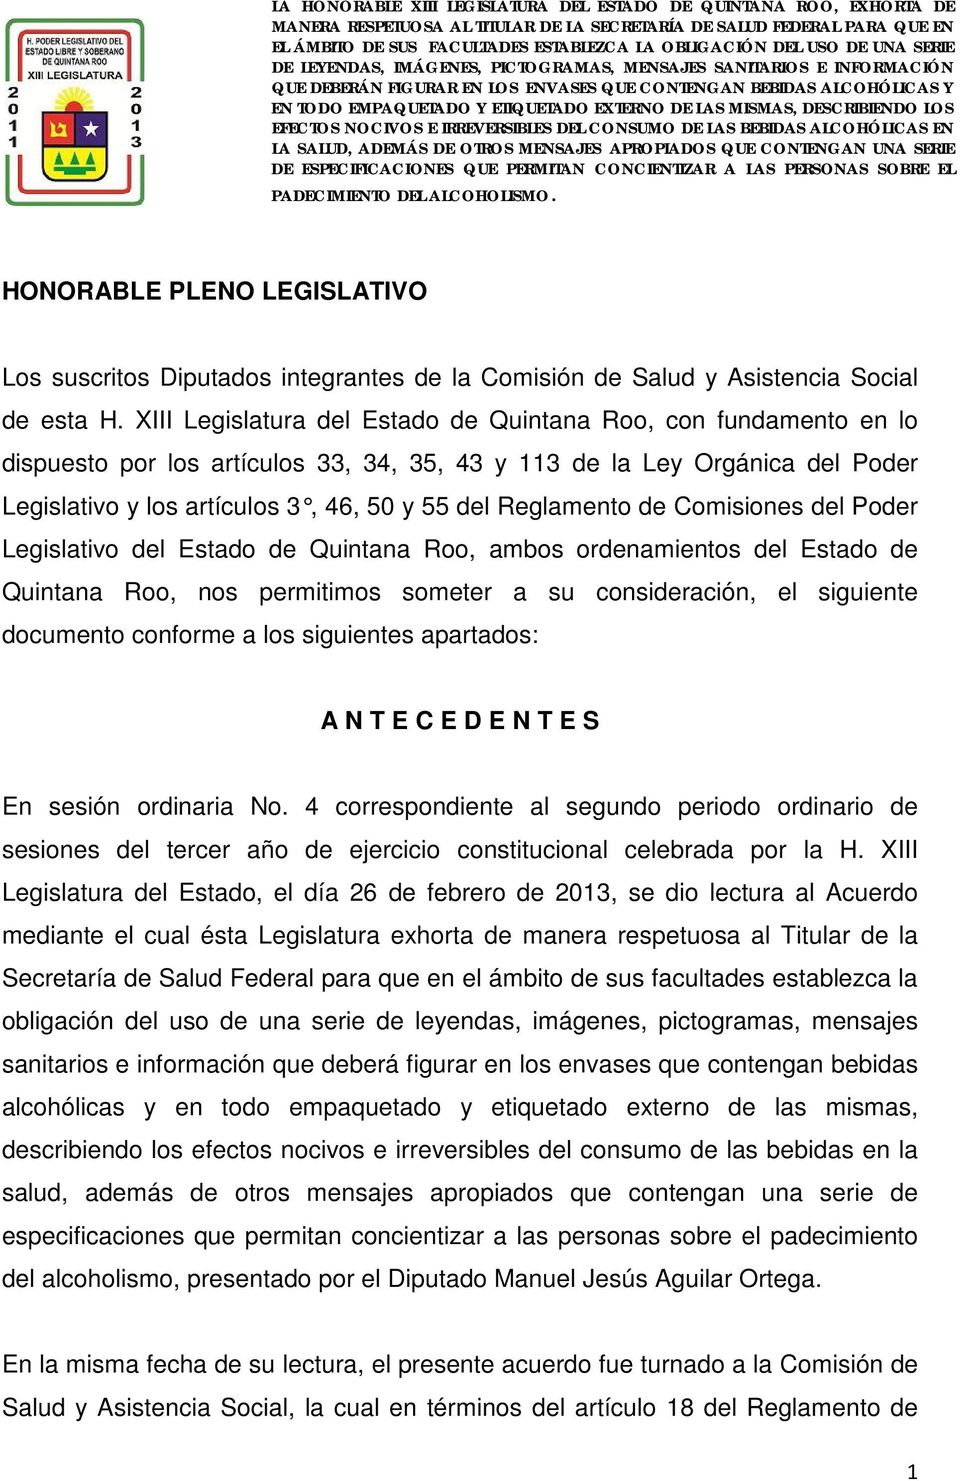 Reglamento de Comisiones del Poder Legislativo del Estado de Quintana Roo, ambos ordenamientos del Estado de Quintana Roo, nos permitimos someter a su consideración, el siguiente documento conforme a